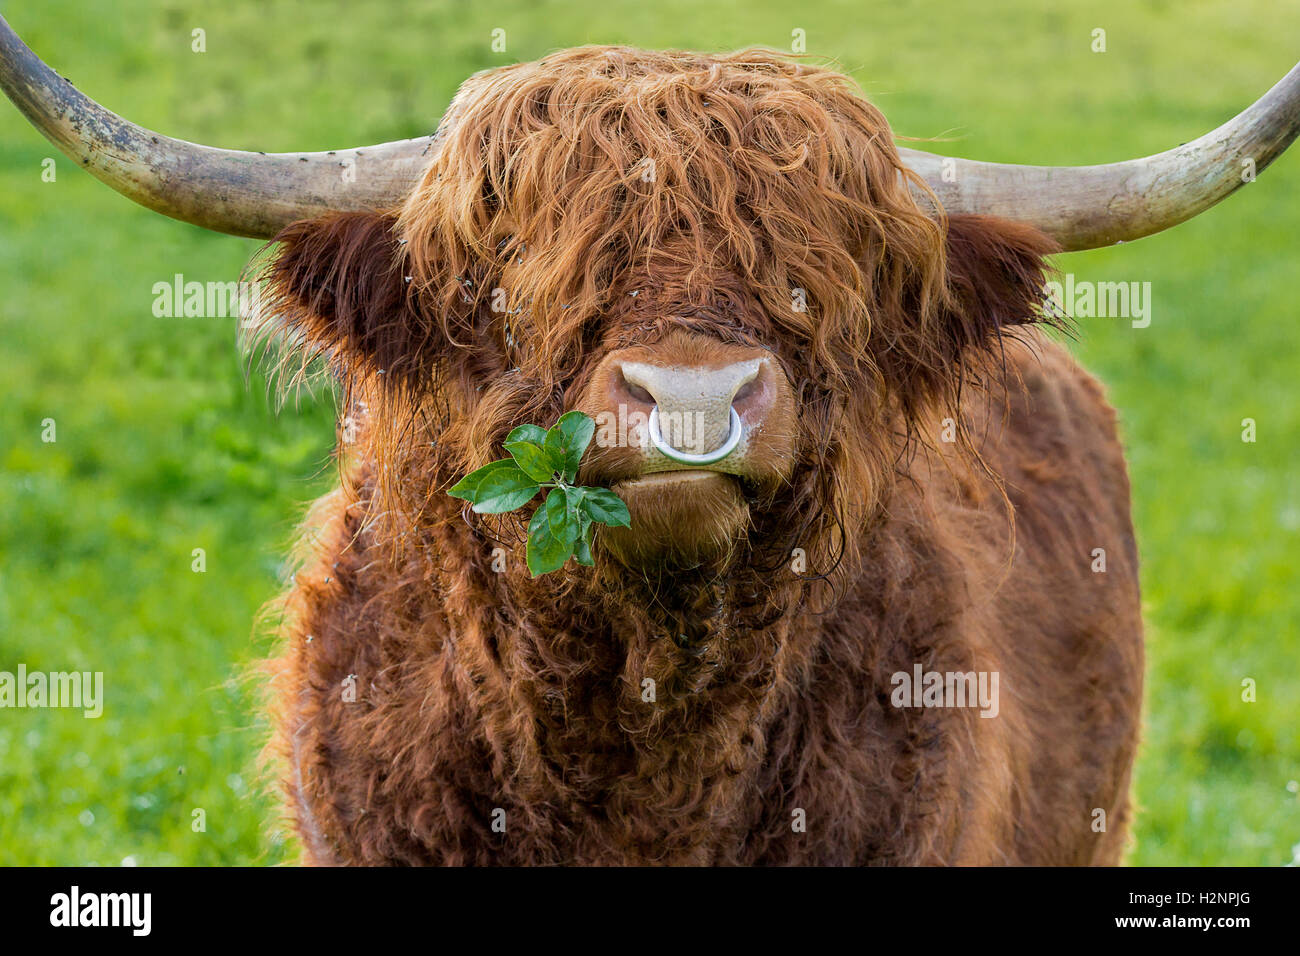 Version non filtrée de mâcher des feuilles de fer avec taureau Highland cattle anneau dans le nez sur un pré vert. Banque D'Images